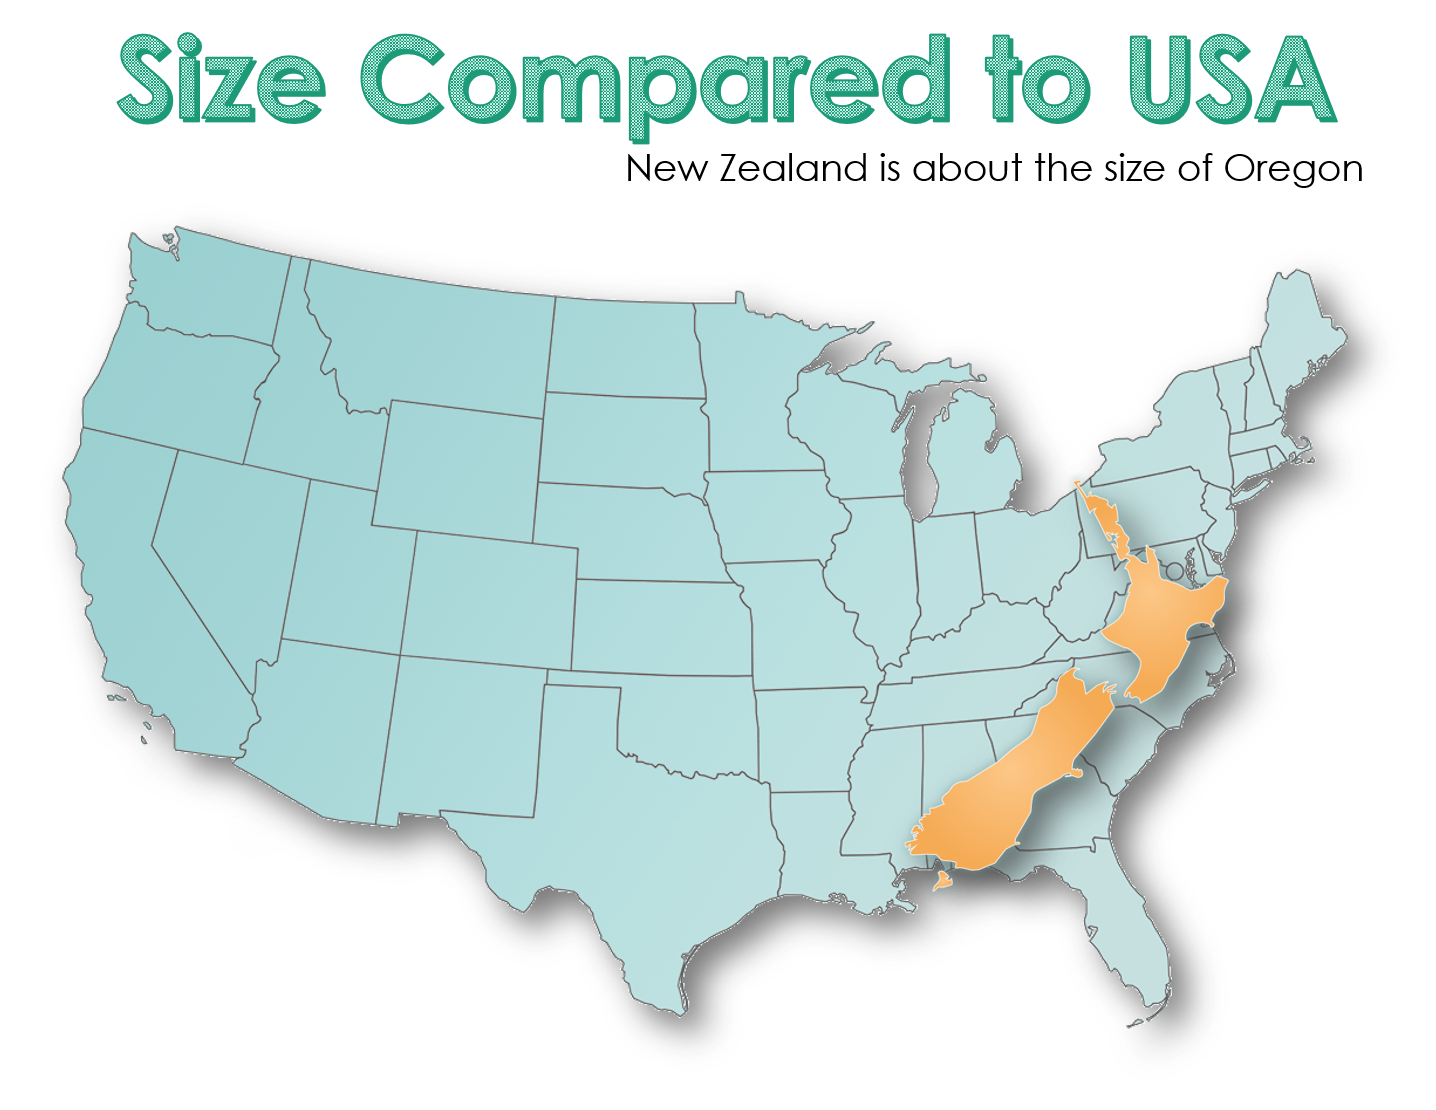 dating in california vs new york size